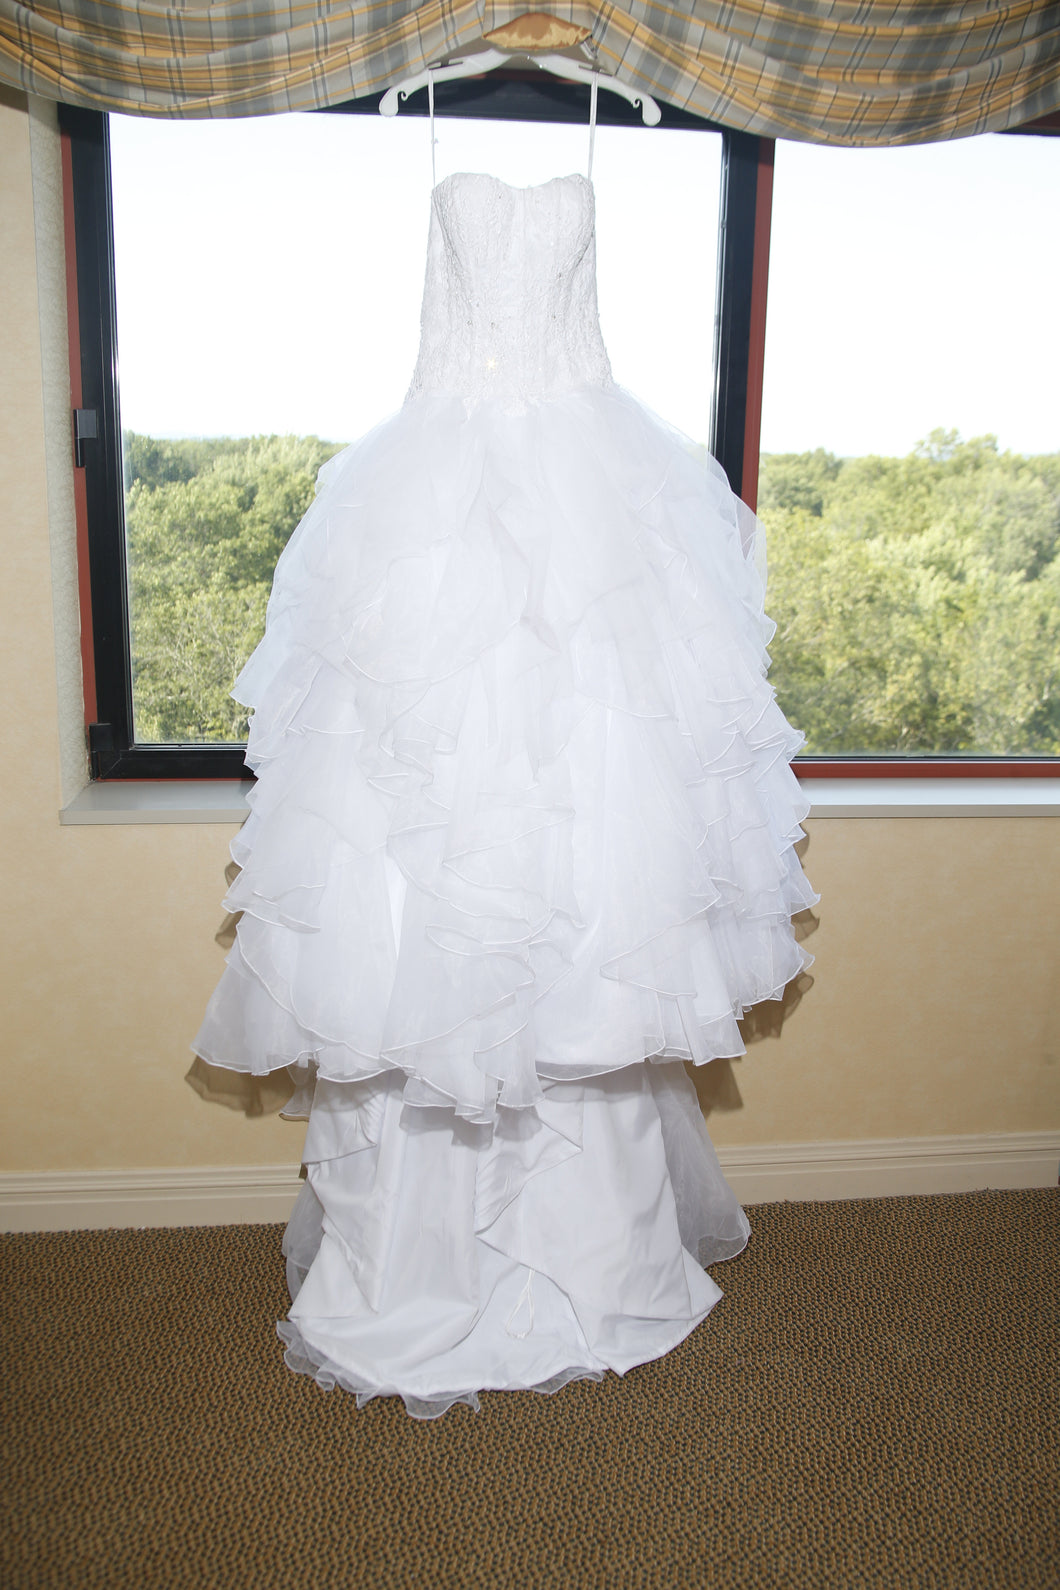 Oleg Cassini 'Strapless Ruffled' size 2 used wedding dress front view on hanger